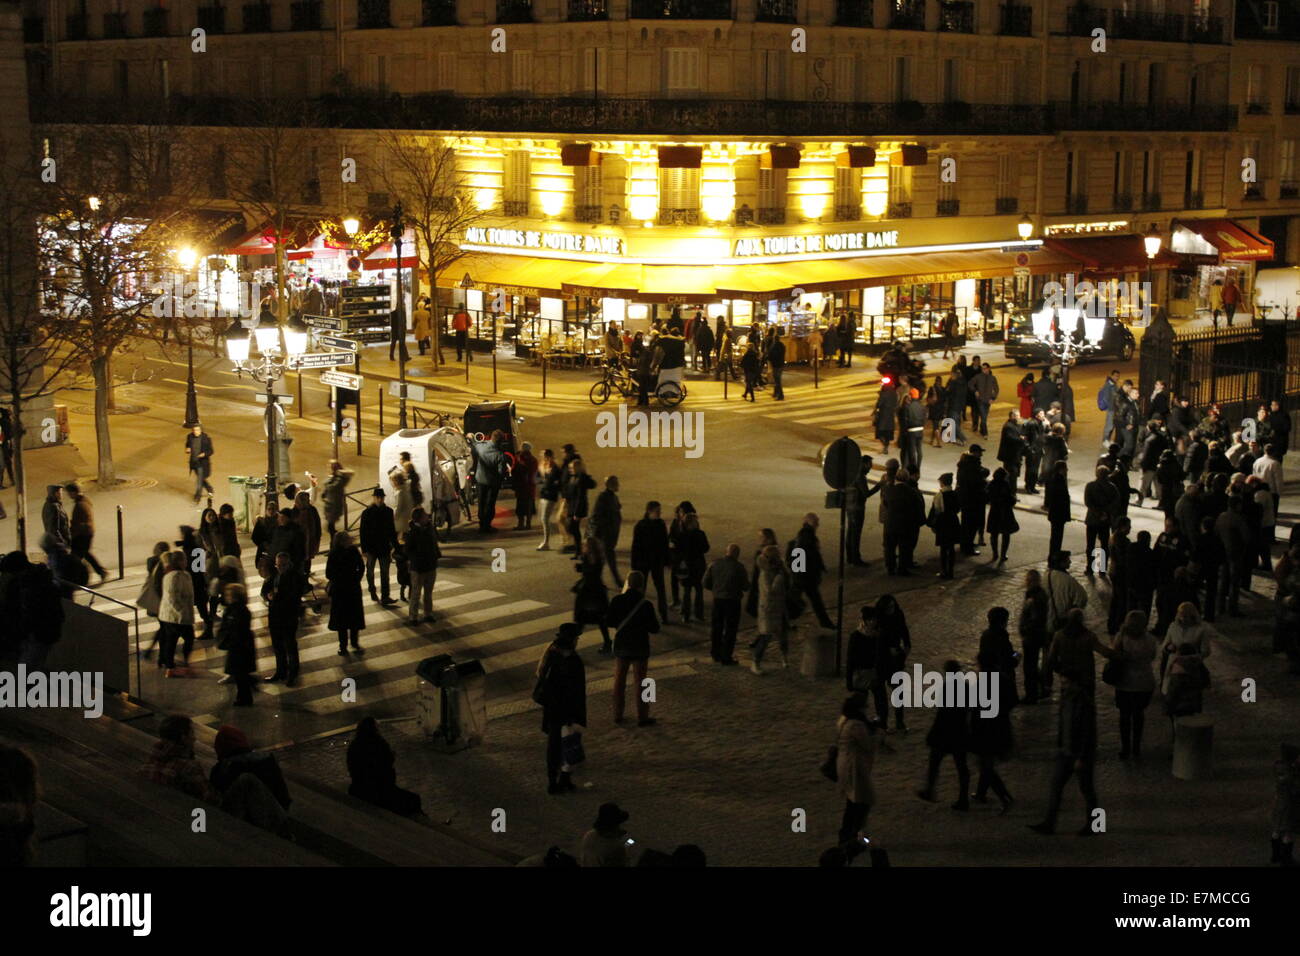 Scène de rue de nuit dans la ville de Paris, à proximité de la cathédrale Notre-Dame de Paris, capitale Française, Ile-de-France, France. Banque D'Images